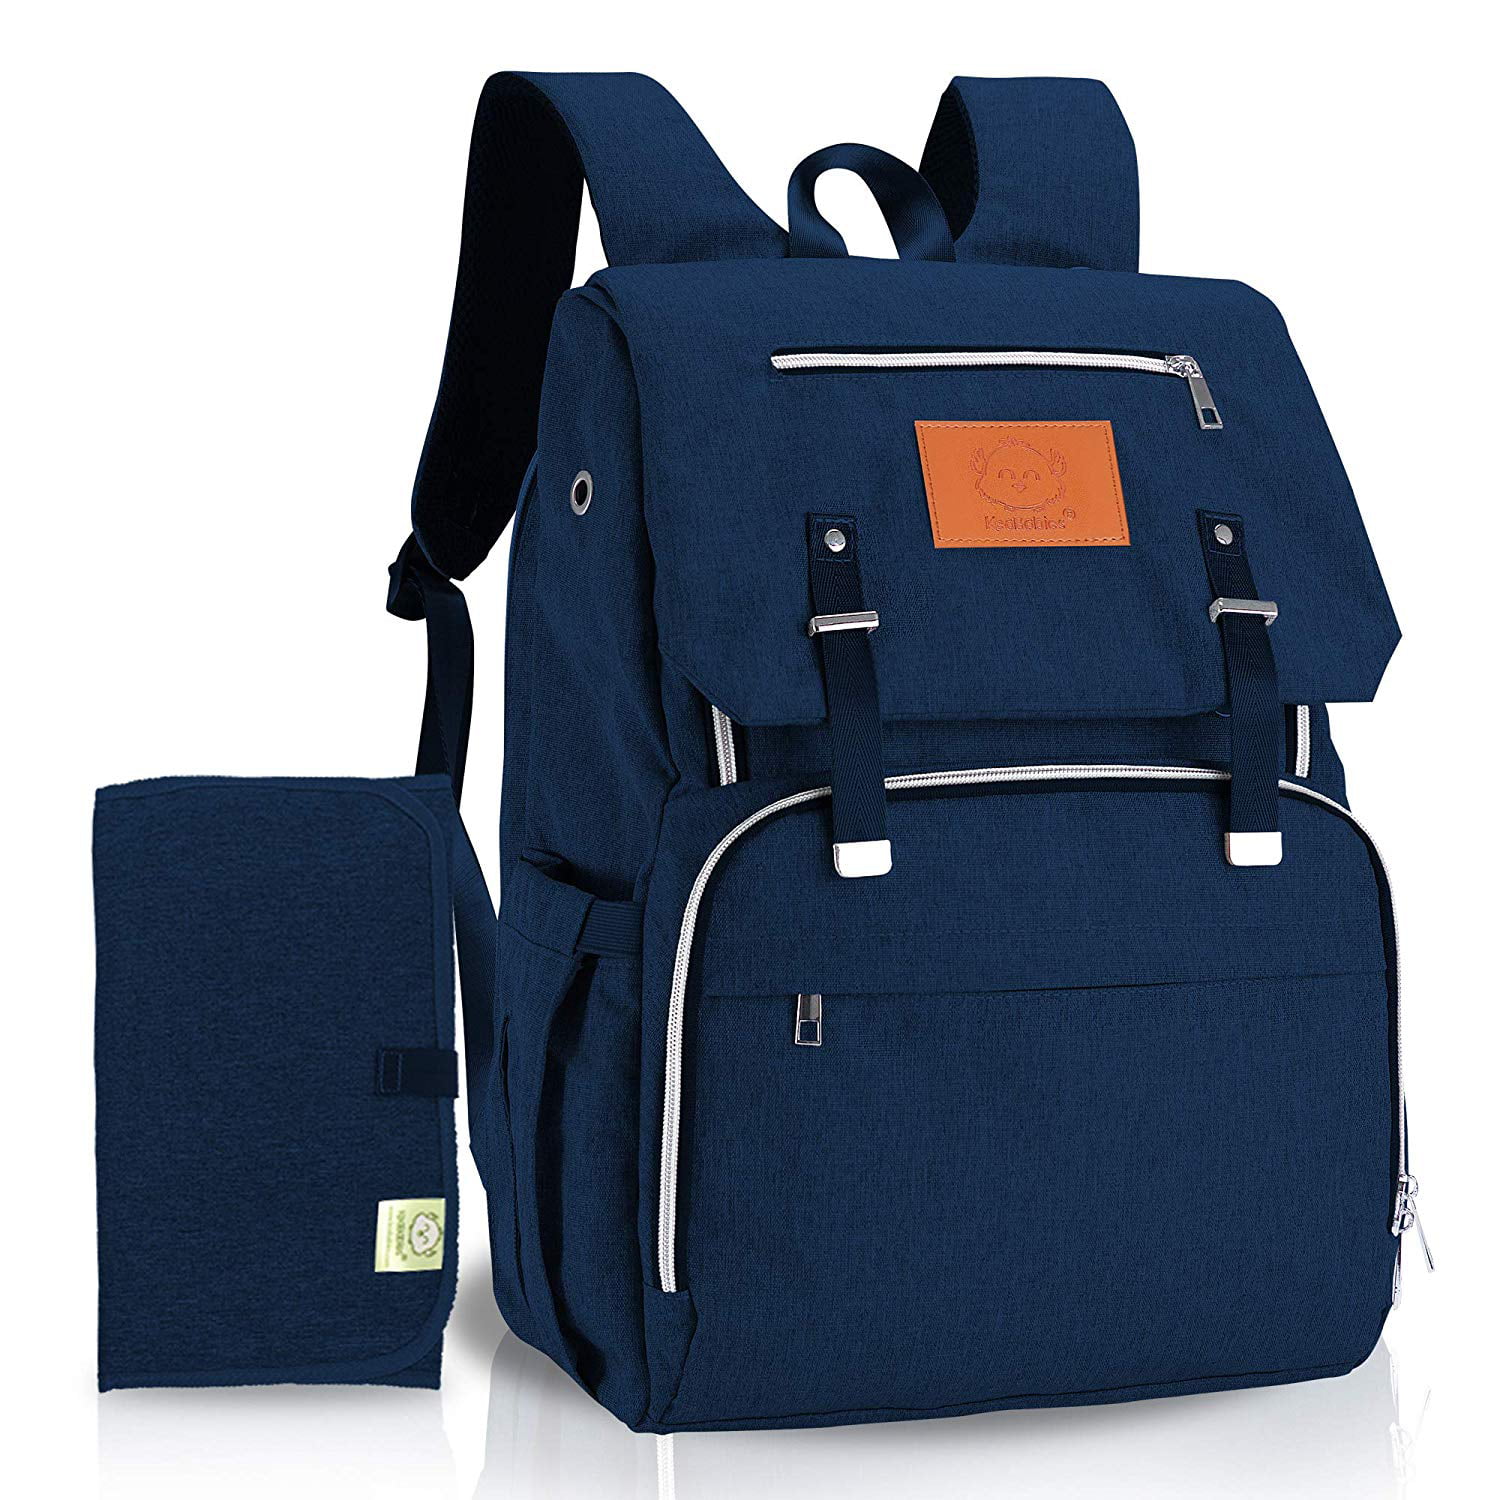 Diaper Bag Backpack, Waterproof Multi Function Baby Travel Bags (Navy